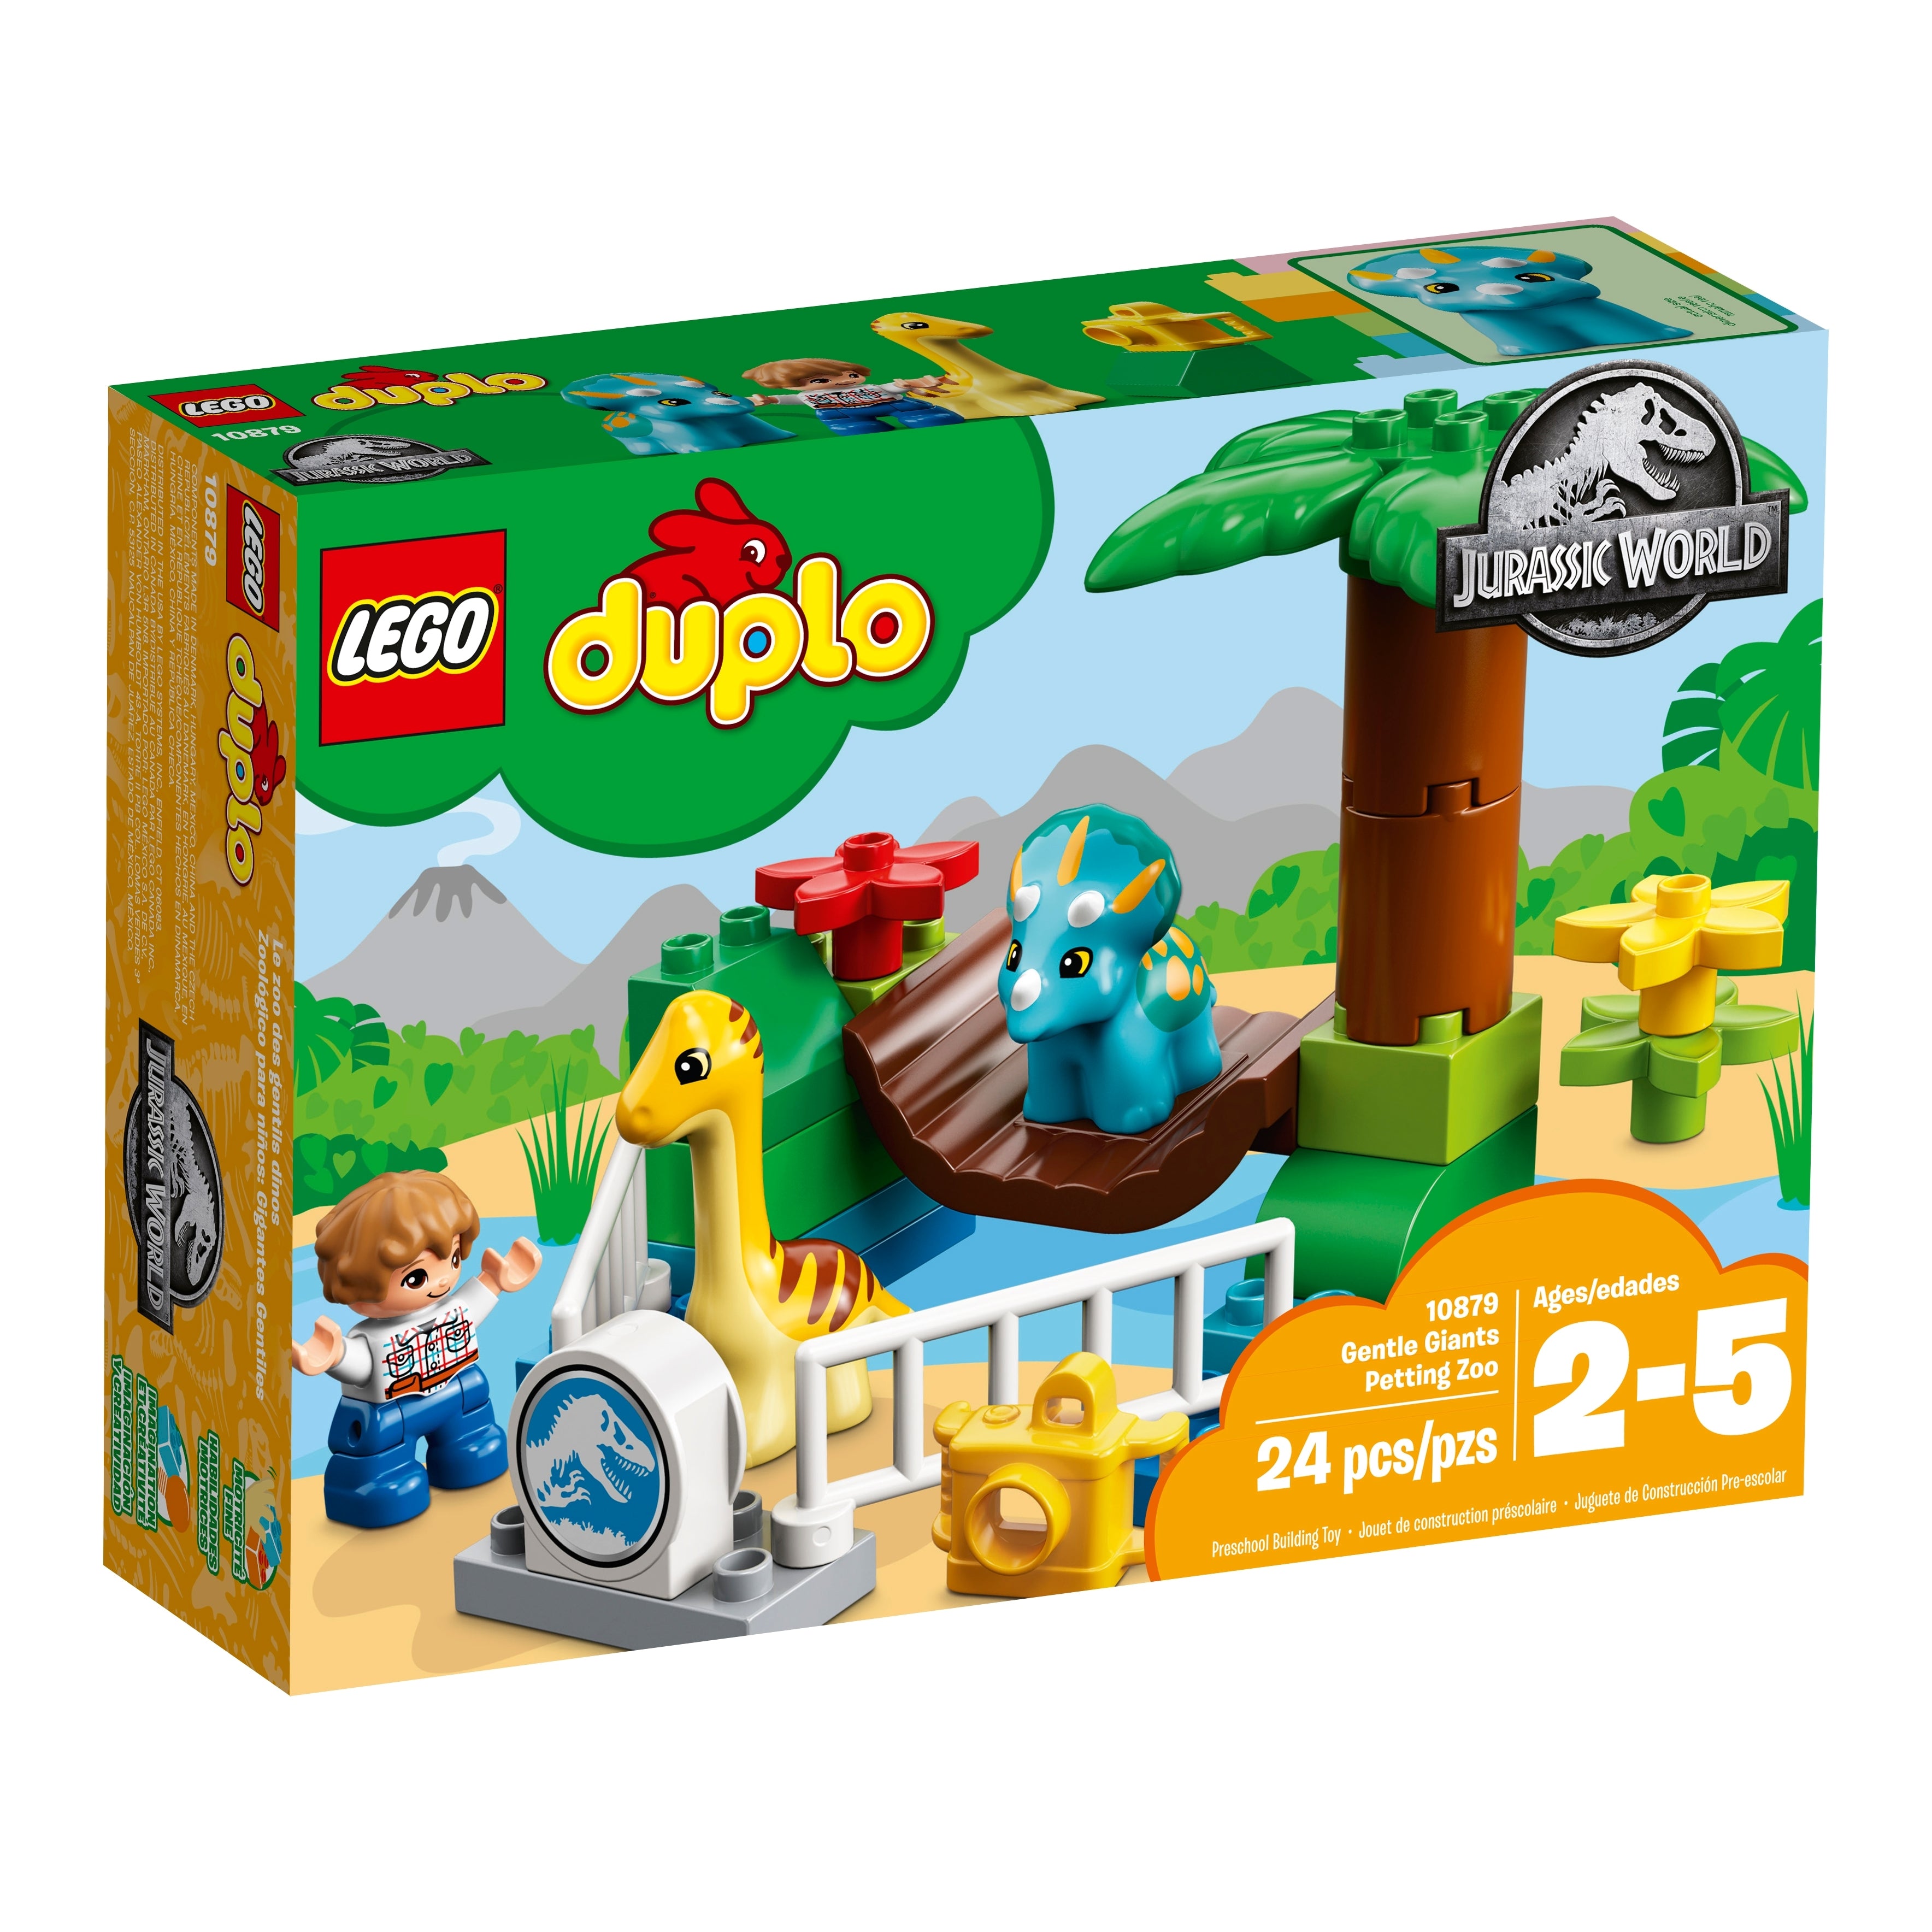 LEGO Duplo Jurassic World Gentle Giants Petting Zoo Set (10879) [RETIRED]